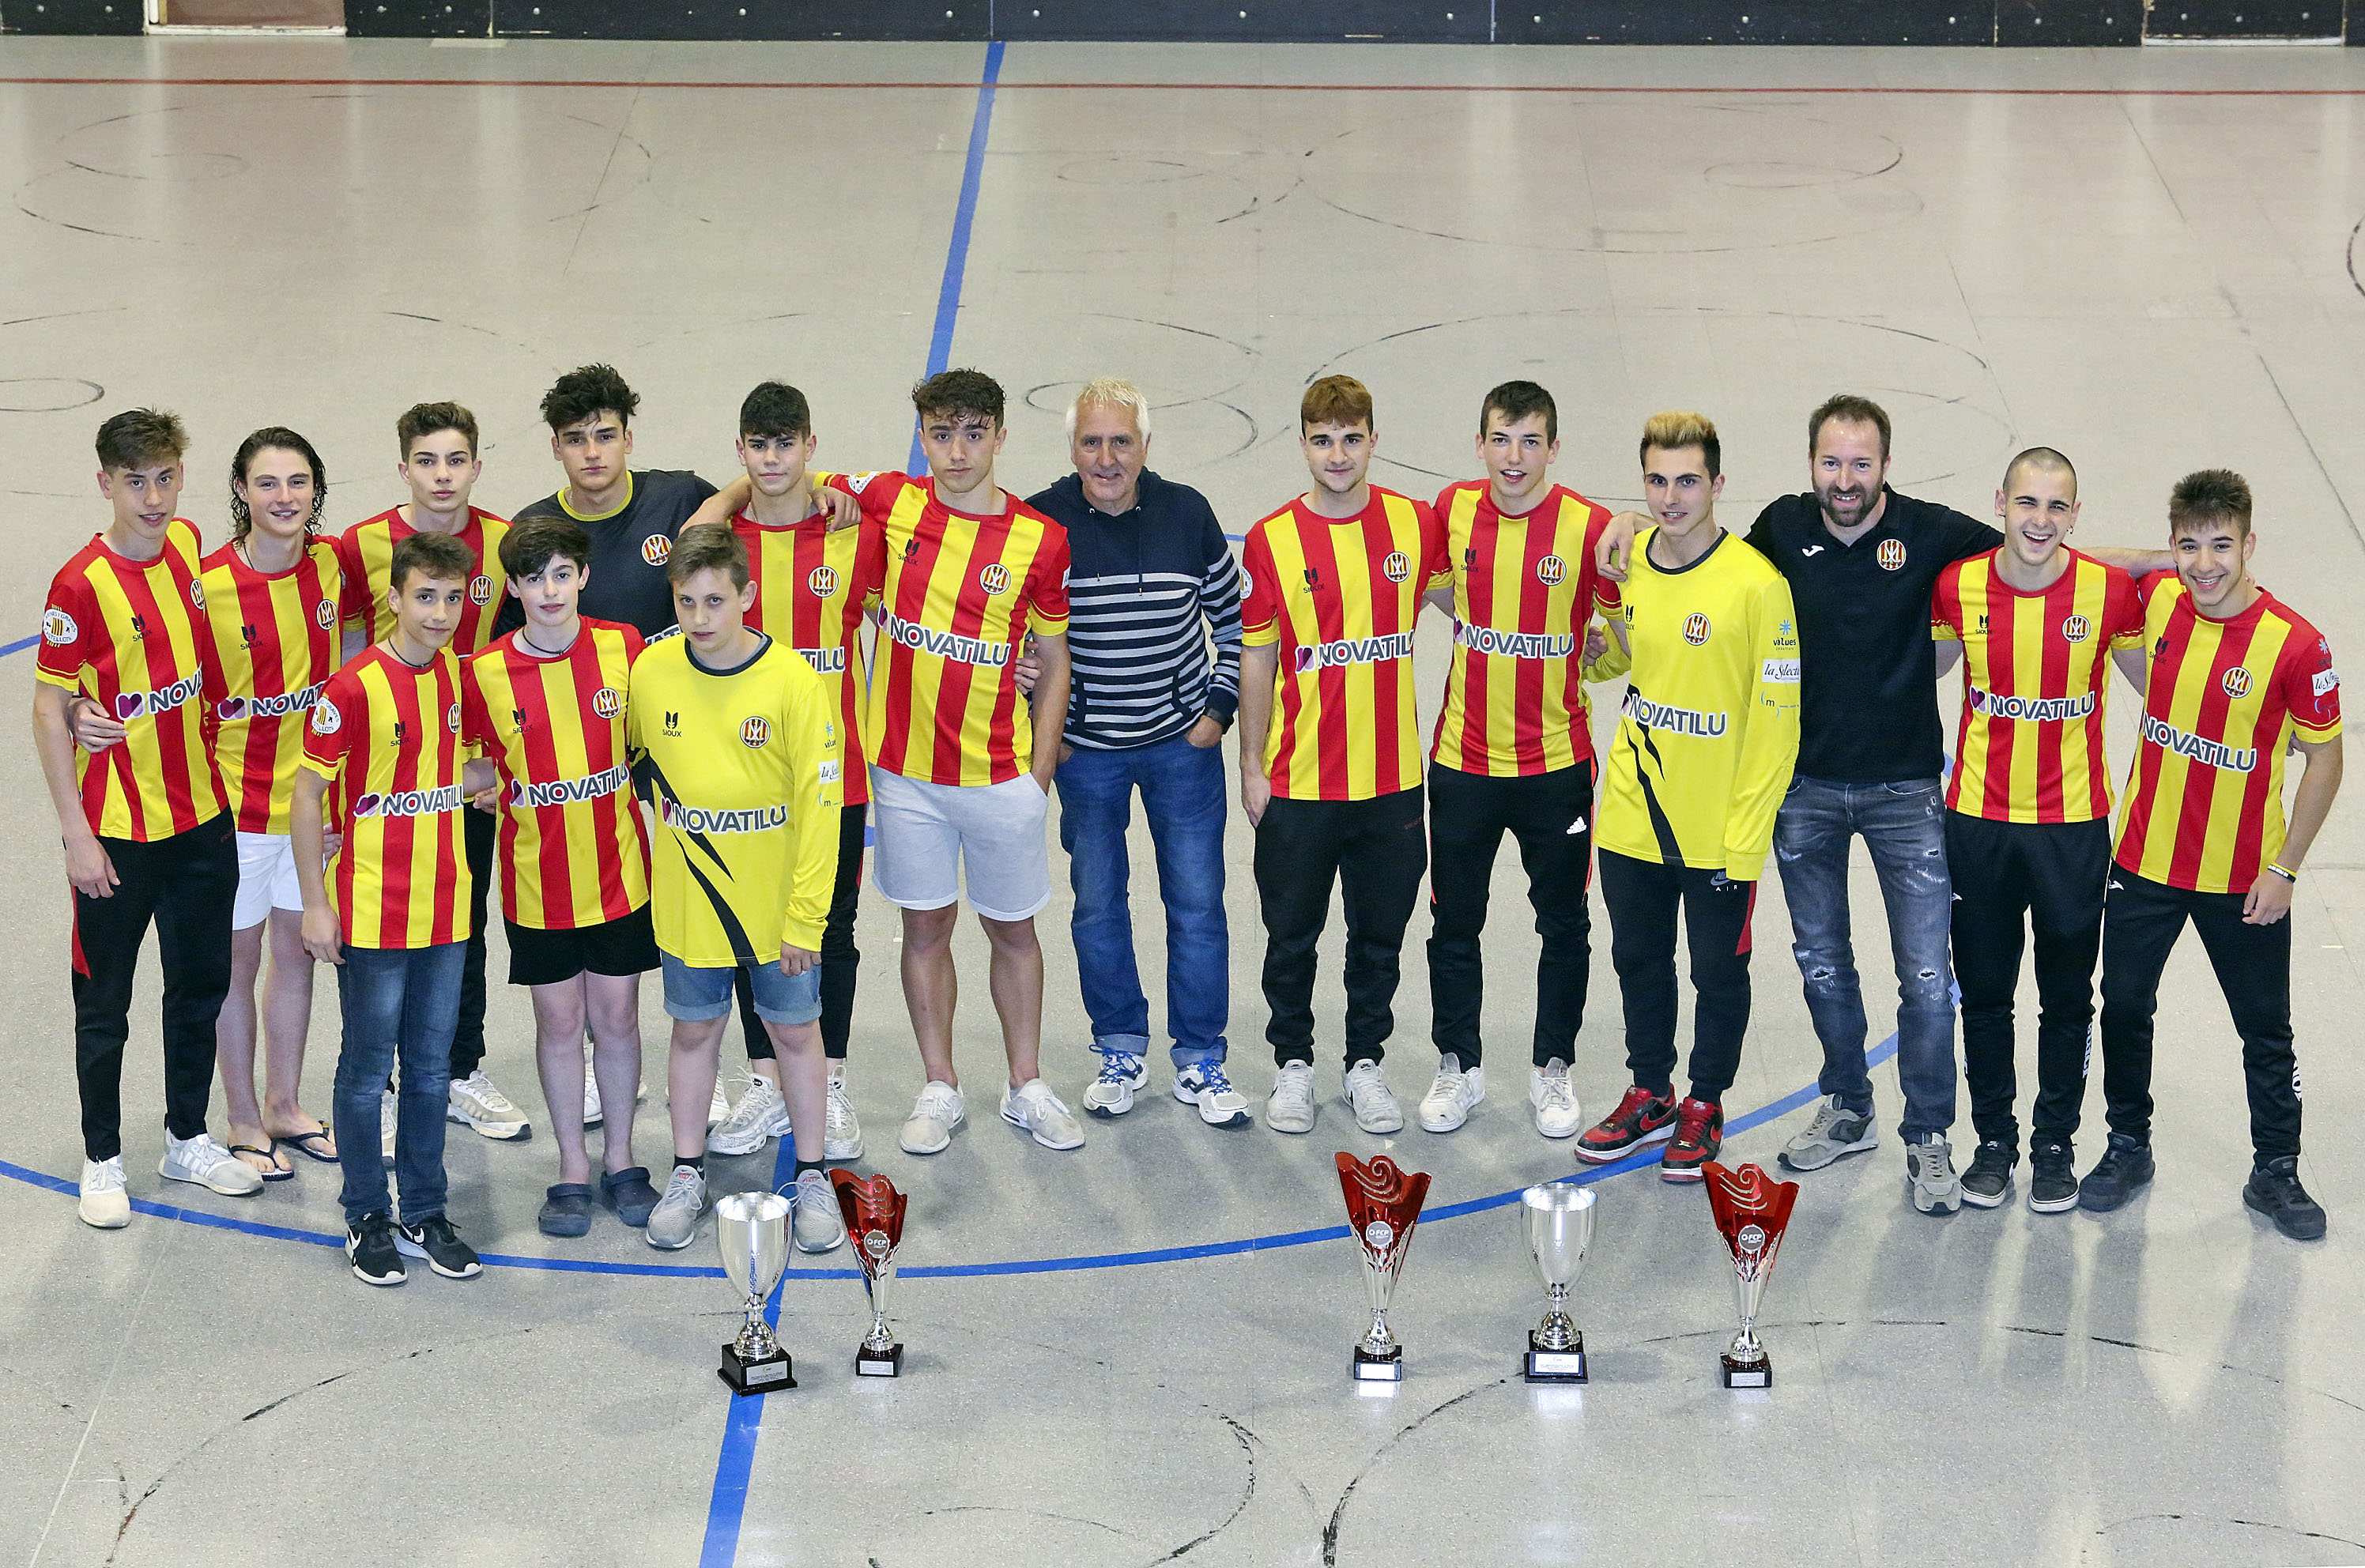 Alguns dels jugadors dels equips Infantil, Juvenil i Júnior del Club Patí Manlleu i els seus tècnics, reunits per EL 9 NOU aquest dimecres amb els trofeus aconseguits enguany als campionats de Catalunya i Espanya